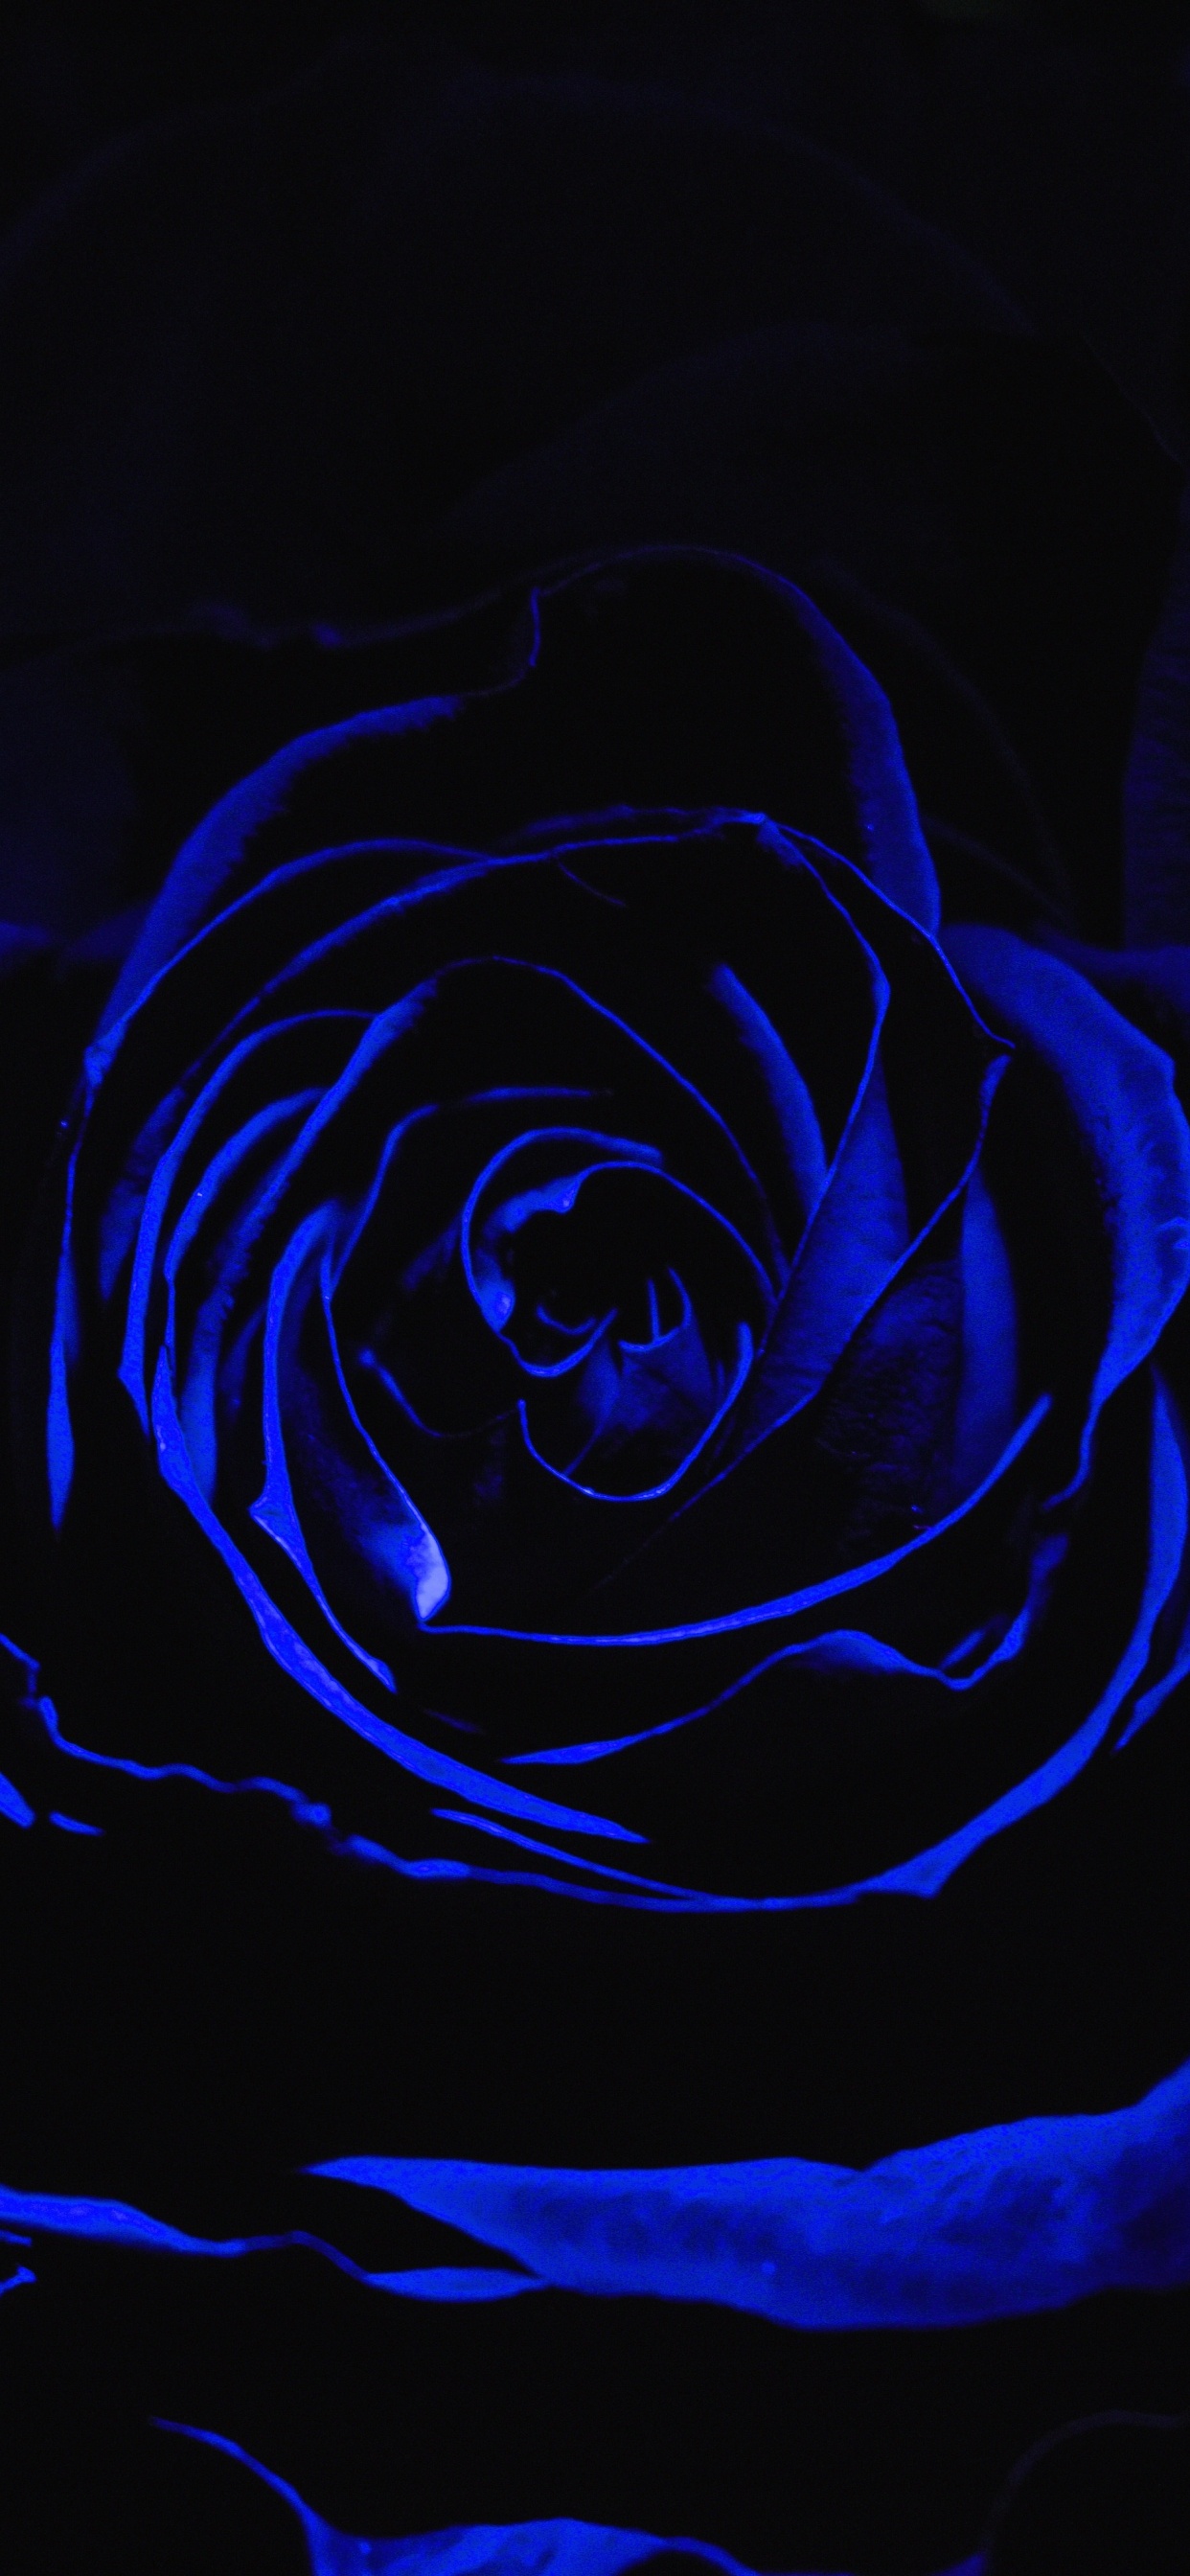 Rosa Azul en Fotografía de Cerca. Wallpaper in 1242x2688 Resolution